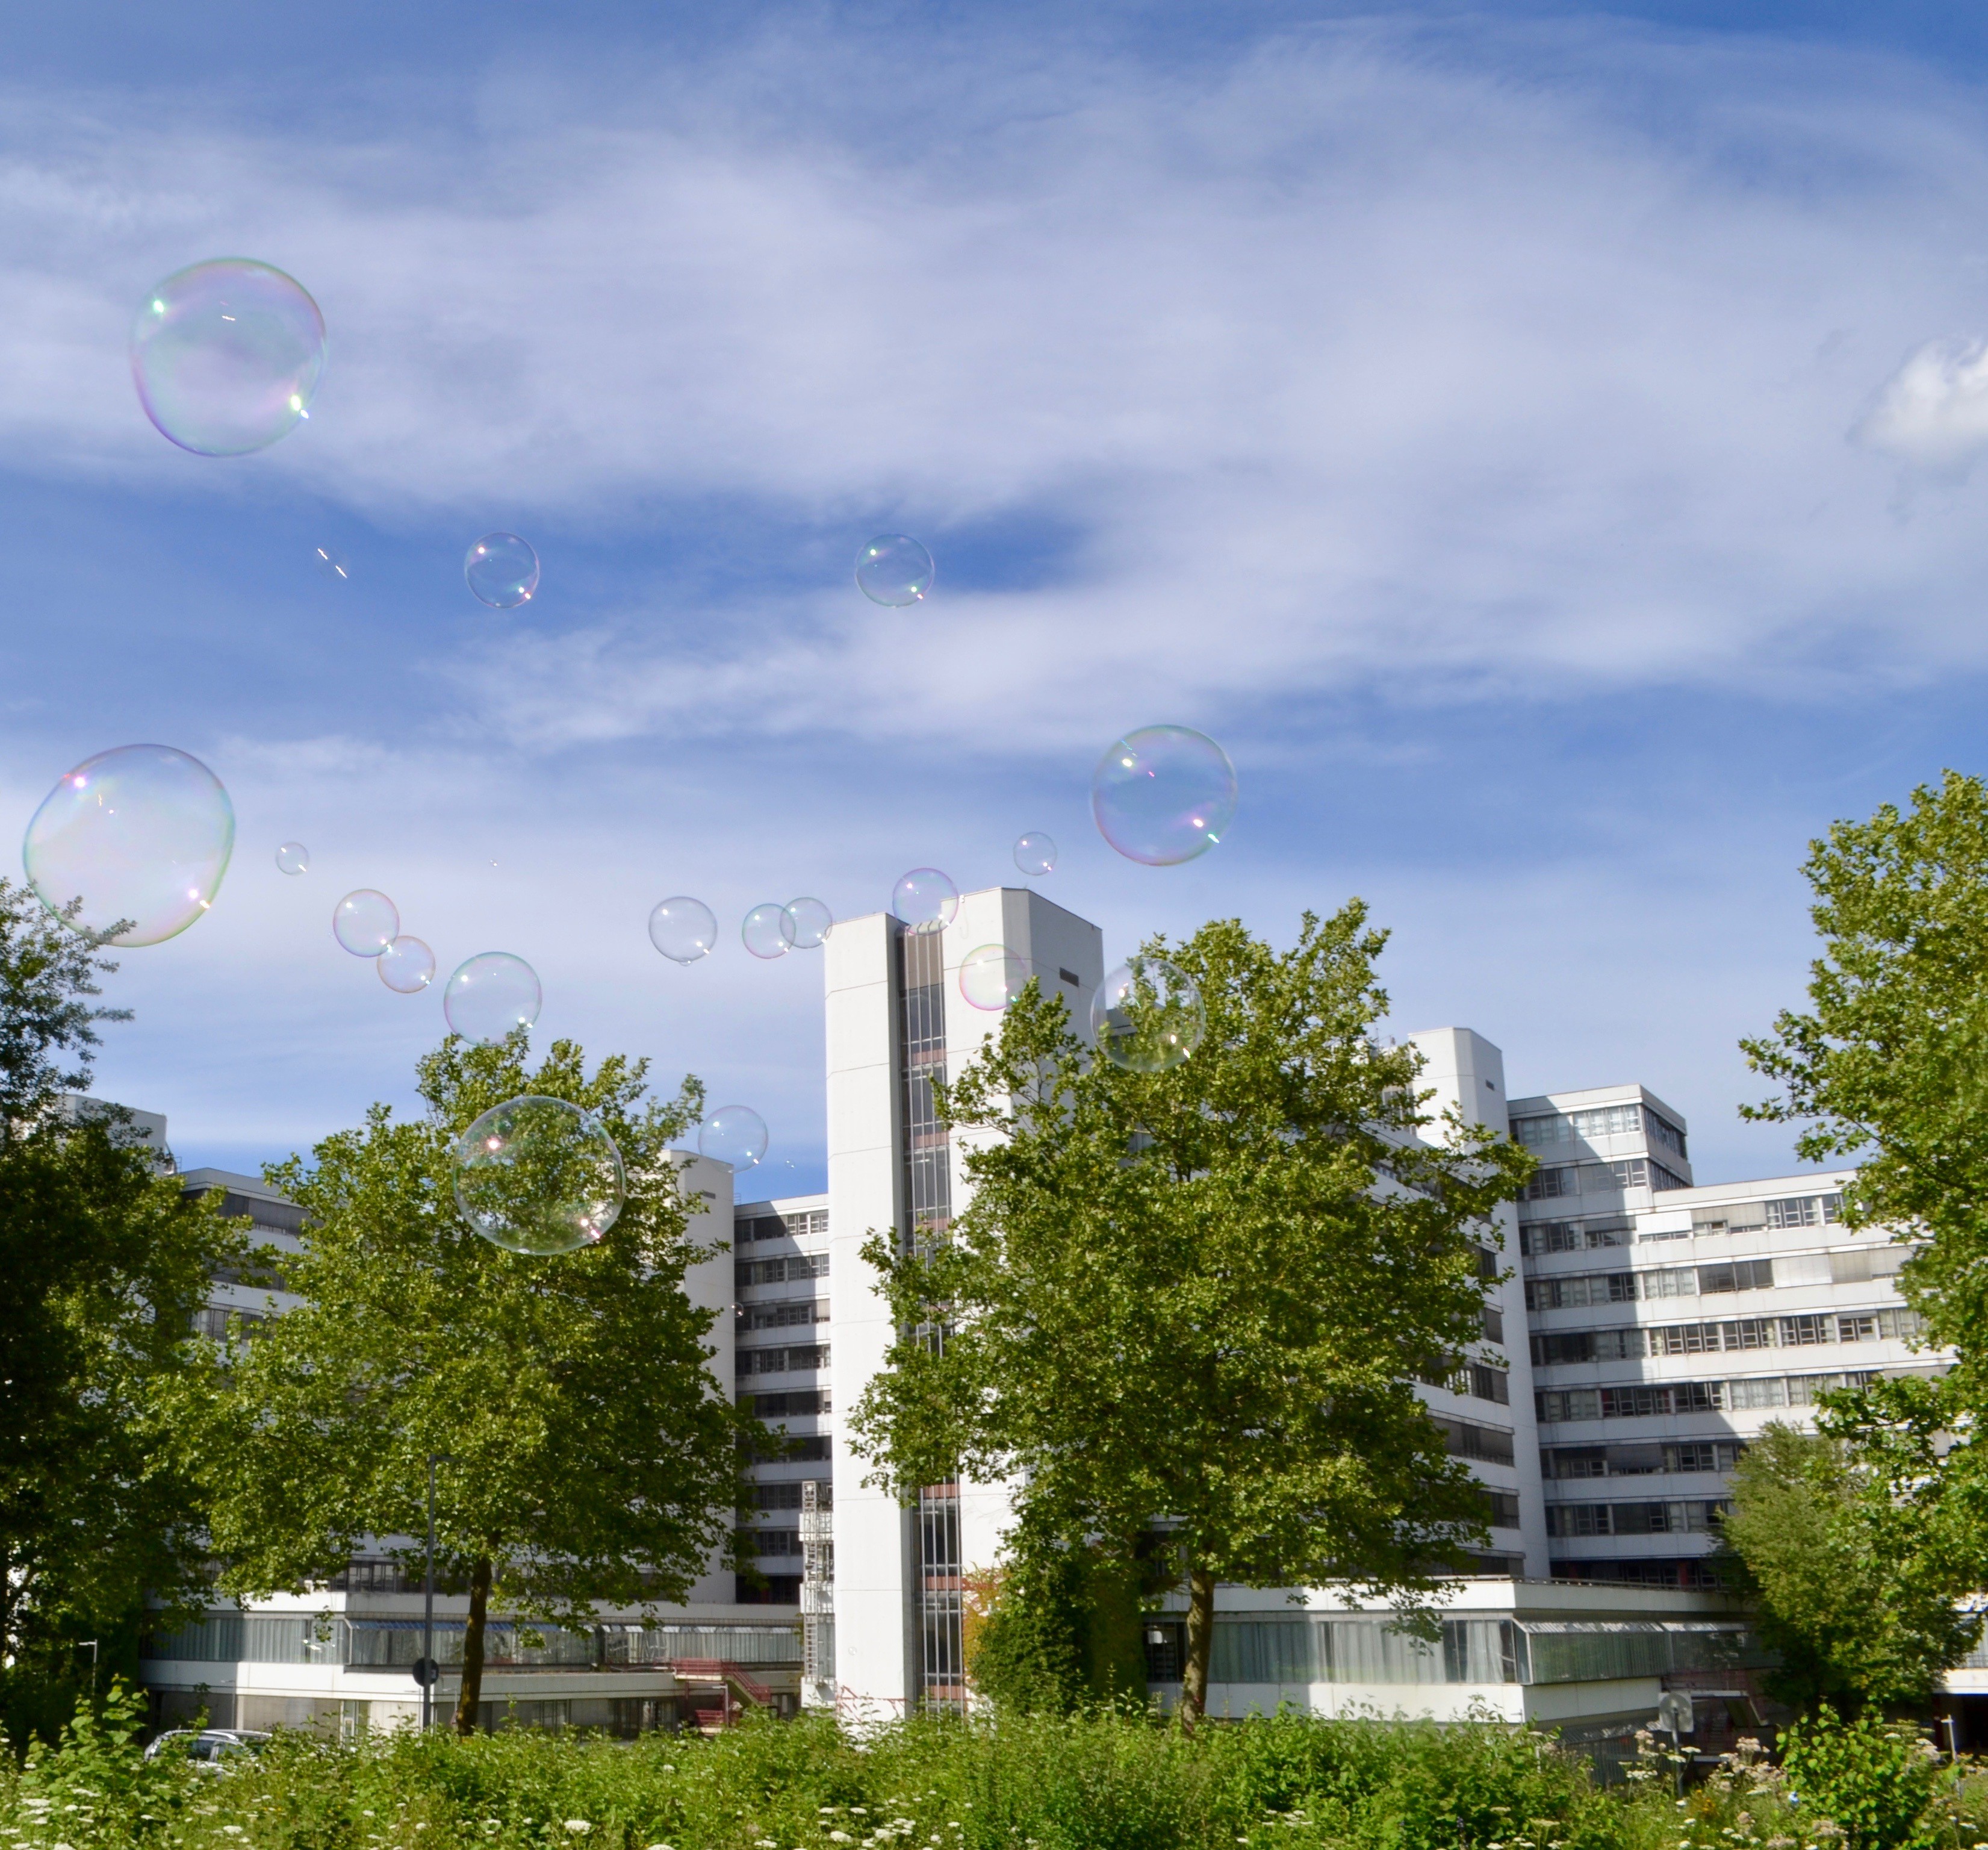 Totale der Universität Bielefeld mit Seifenblasen im Vordergrund